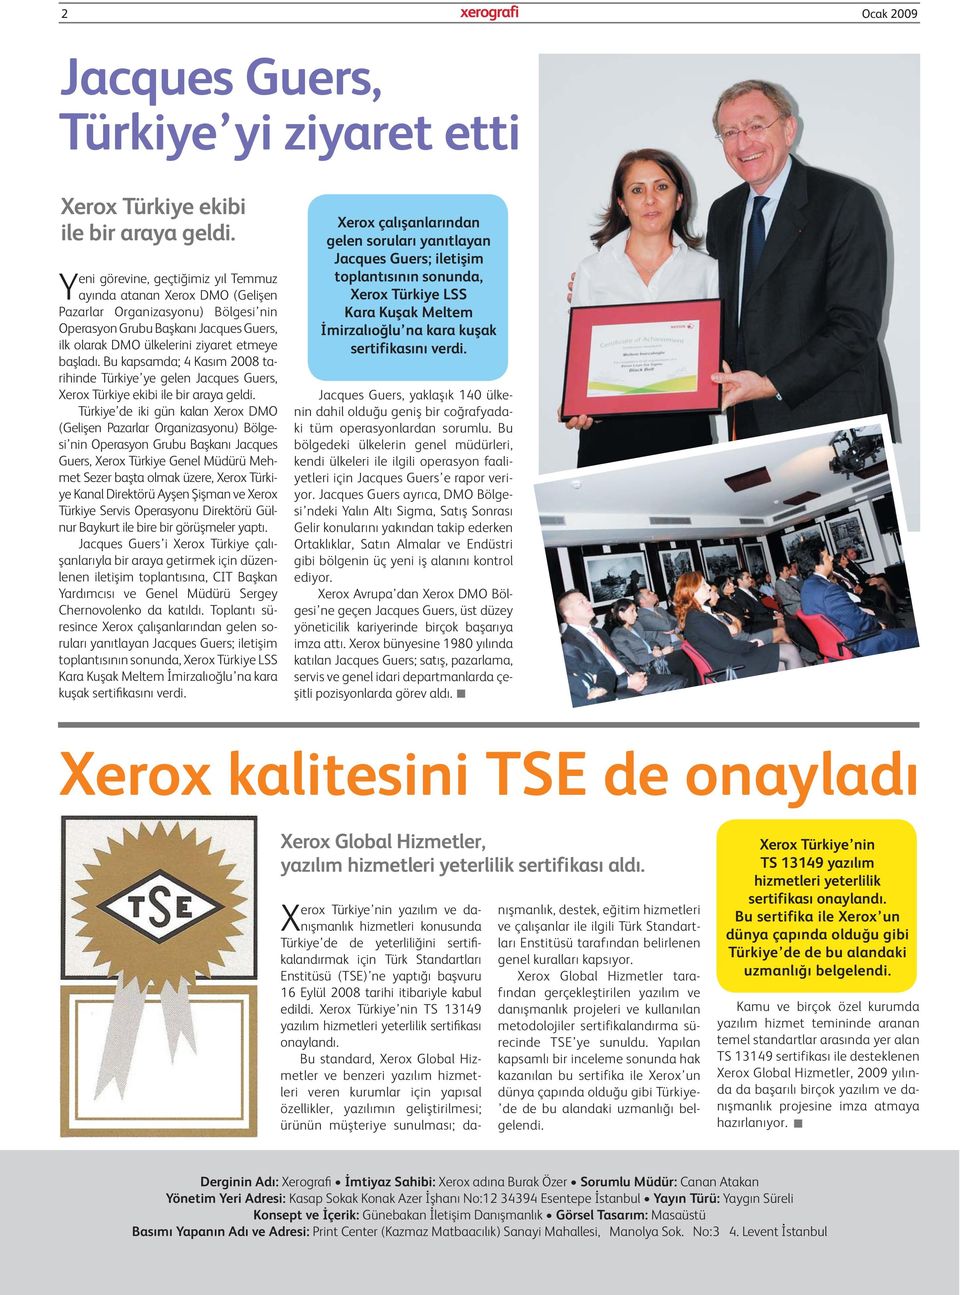 Bu kapsamda; 4 Kasım 2008 tarihinde Türkiye ye gelen Jacques Guers, Xerox Türkiye ekibi ile bir araya geldi.